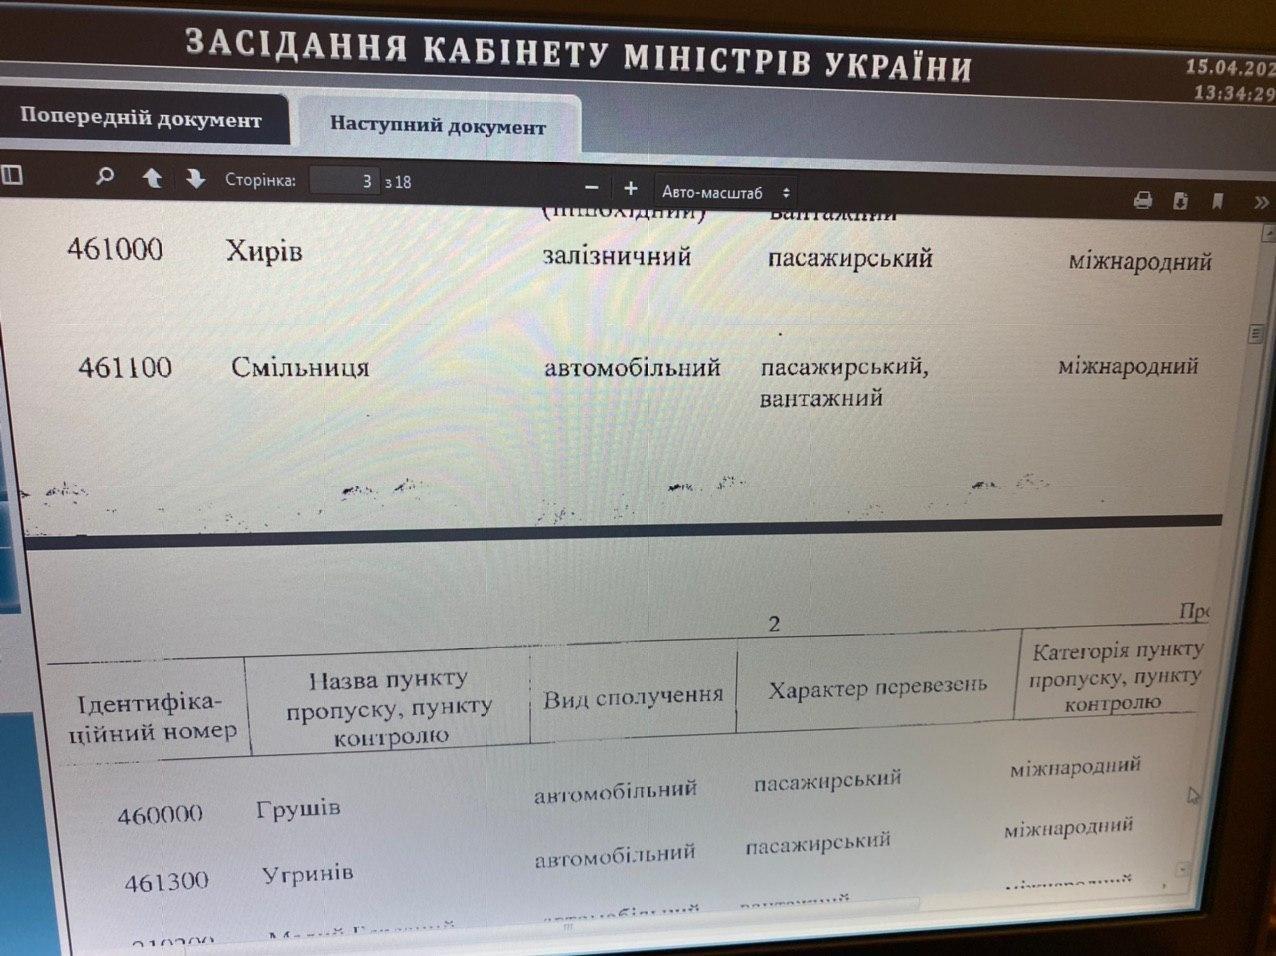 Правительство закрывает еще 10 КПП на границе. Документ: Алексей Гончаренко в Telegram